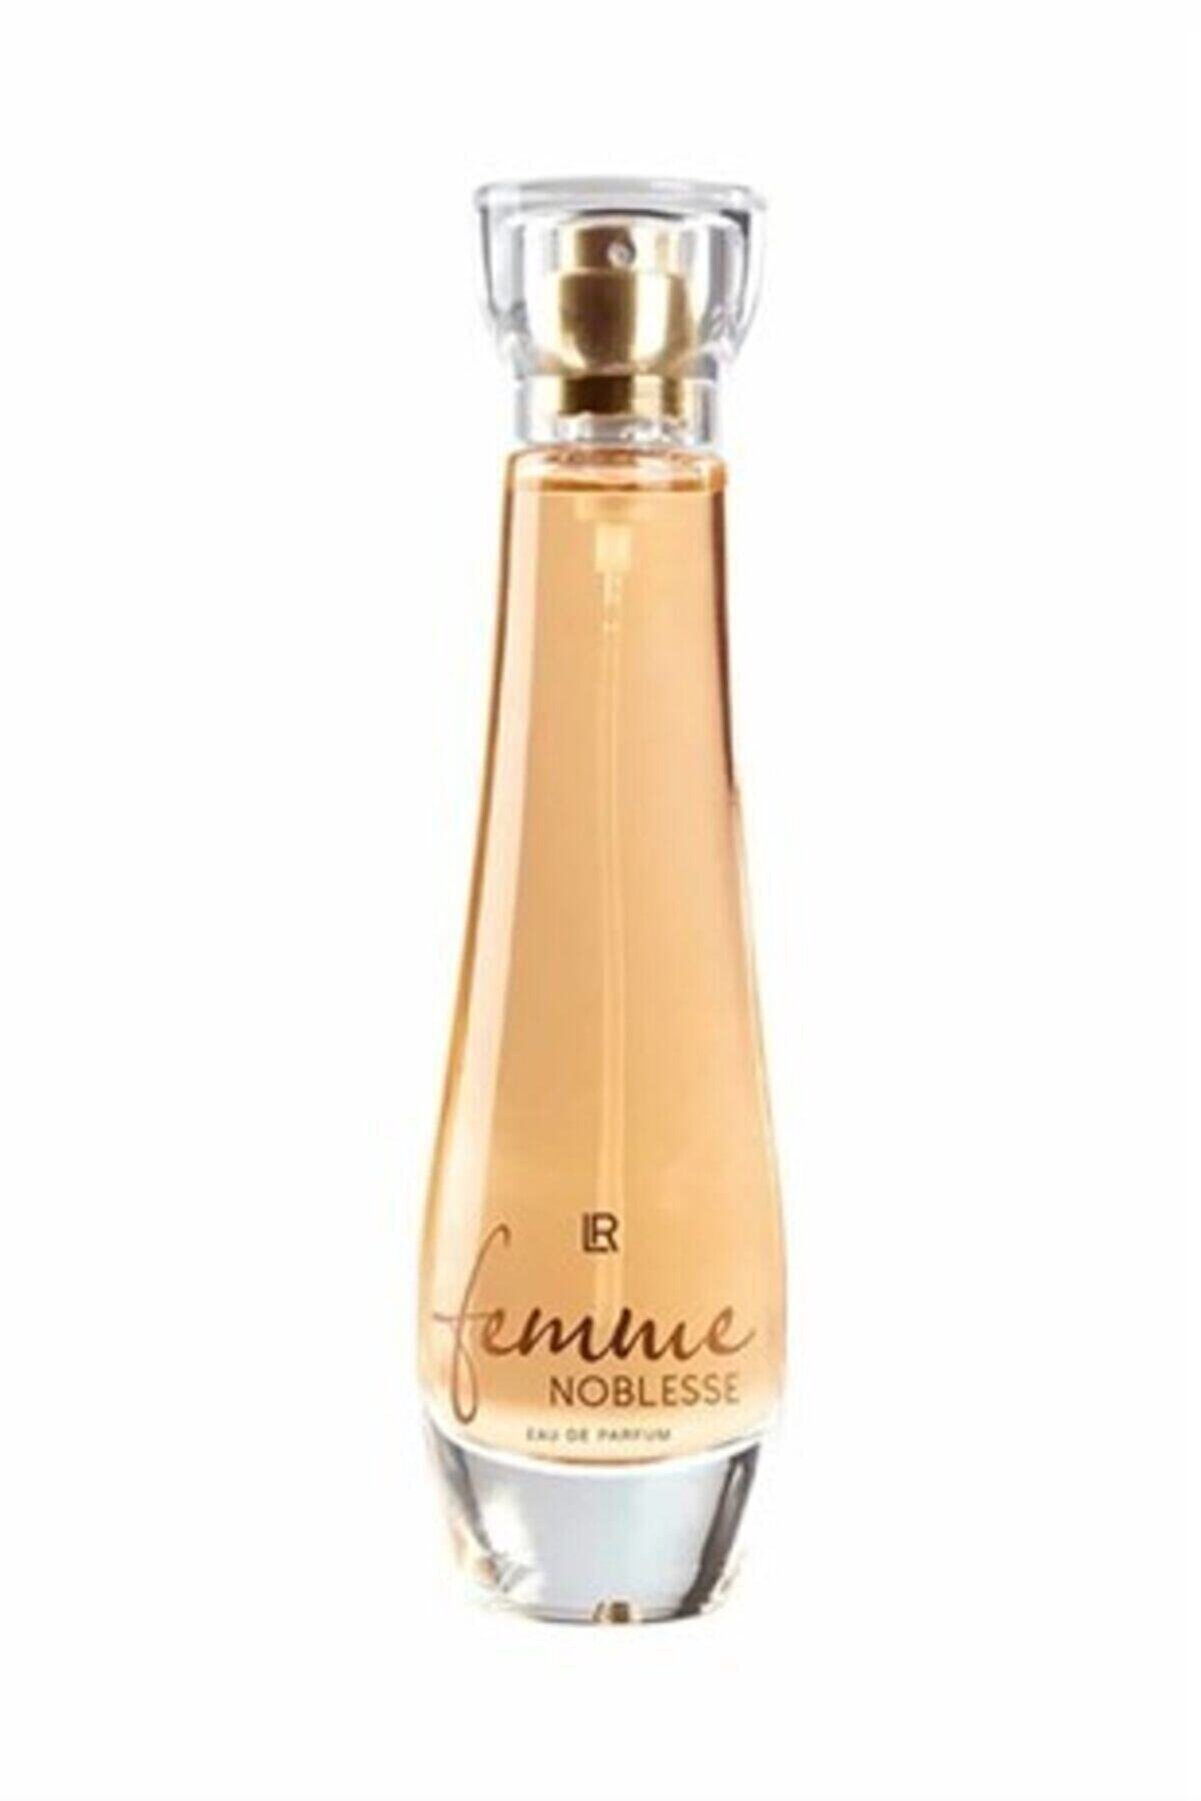 LR Femme Noblesse Edp 50 ml Kadın Parfüm